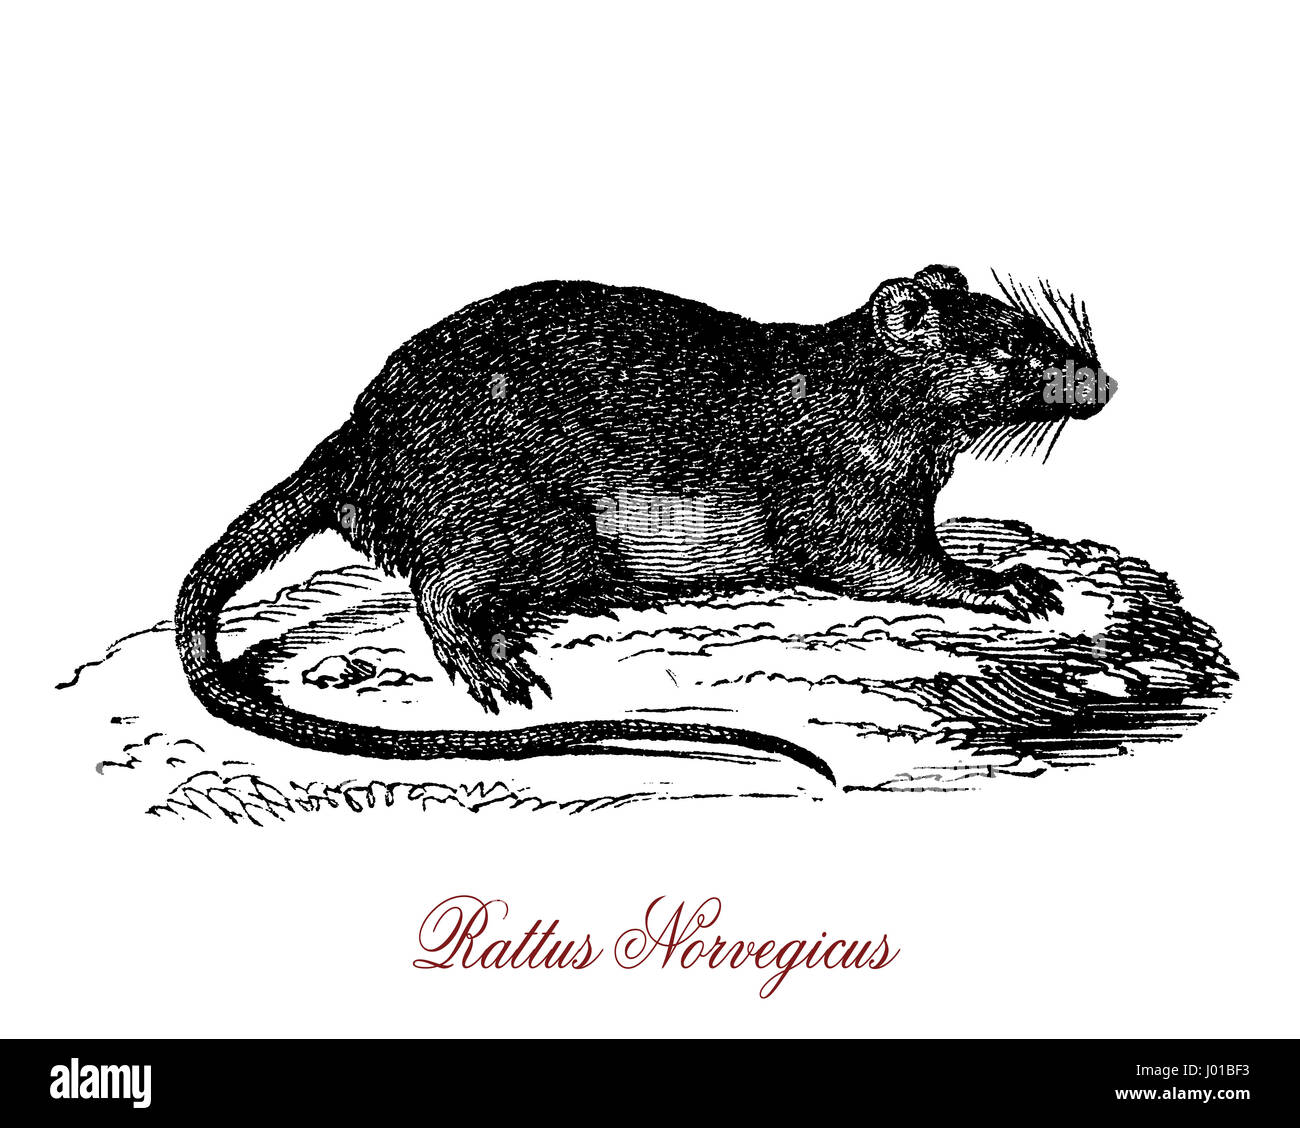 Rattus Norvegicus ist Beste als gemeinsame Ratte, Straße Ratte, Kanalratte oder nur Ratte bekannt. Einer der größten Muroids, es ist eine braune oder graue Nager mit einem Körper bis zu 25 cm. Stockfoto